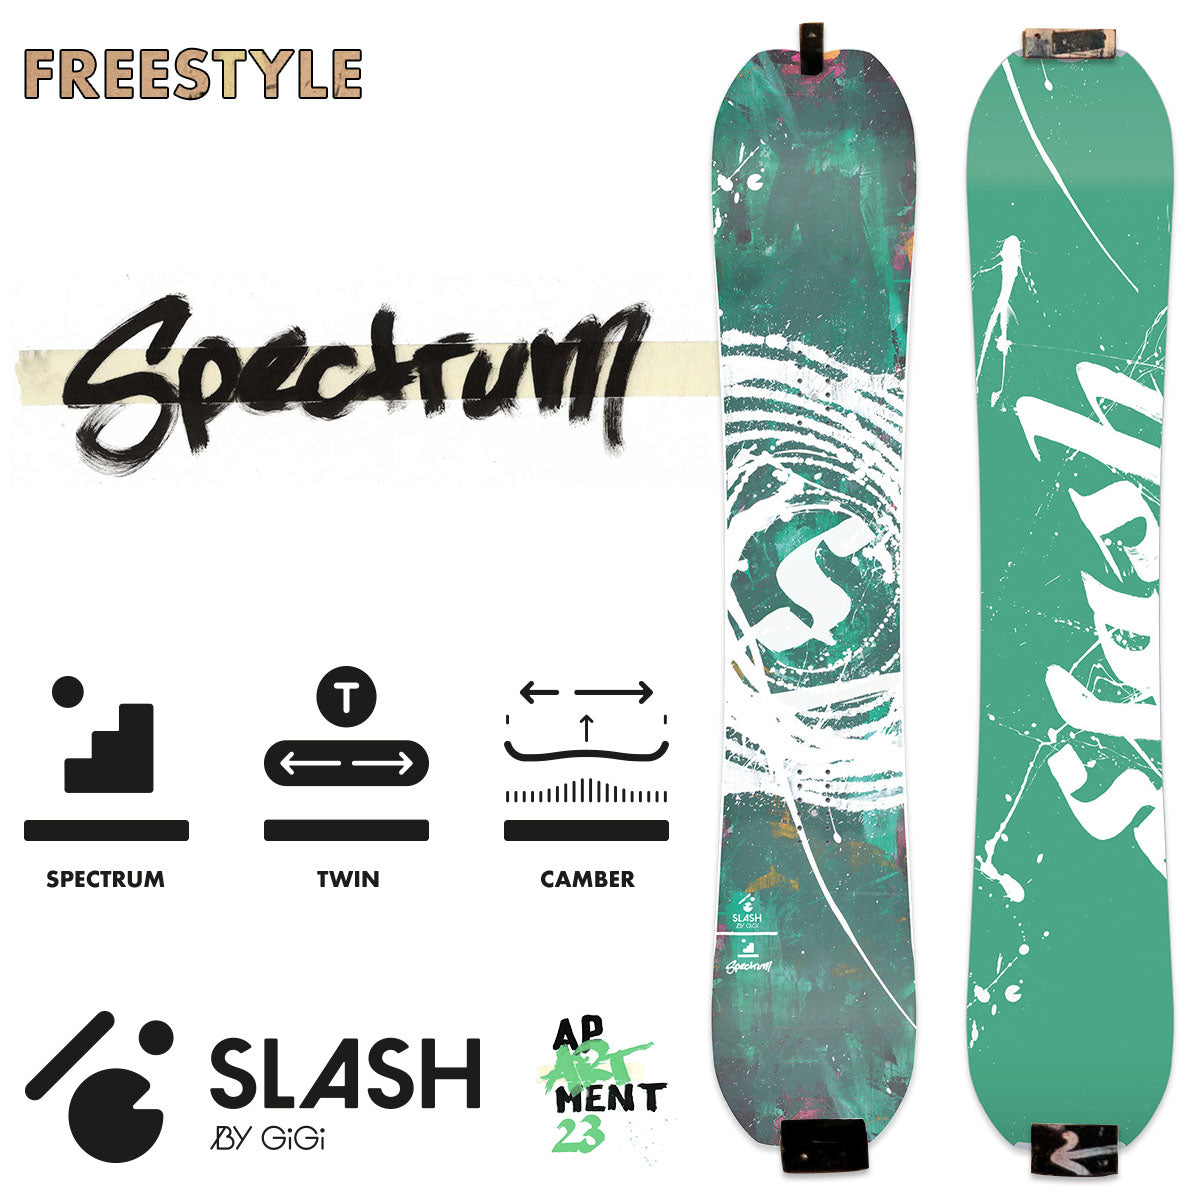 Slash ApArtment23 Spectrum Snowboard